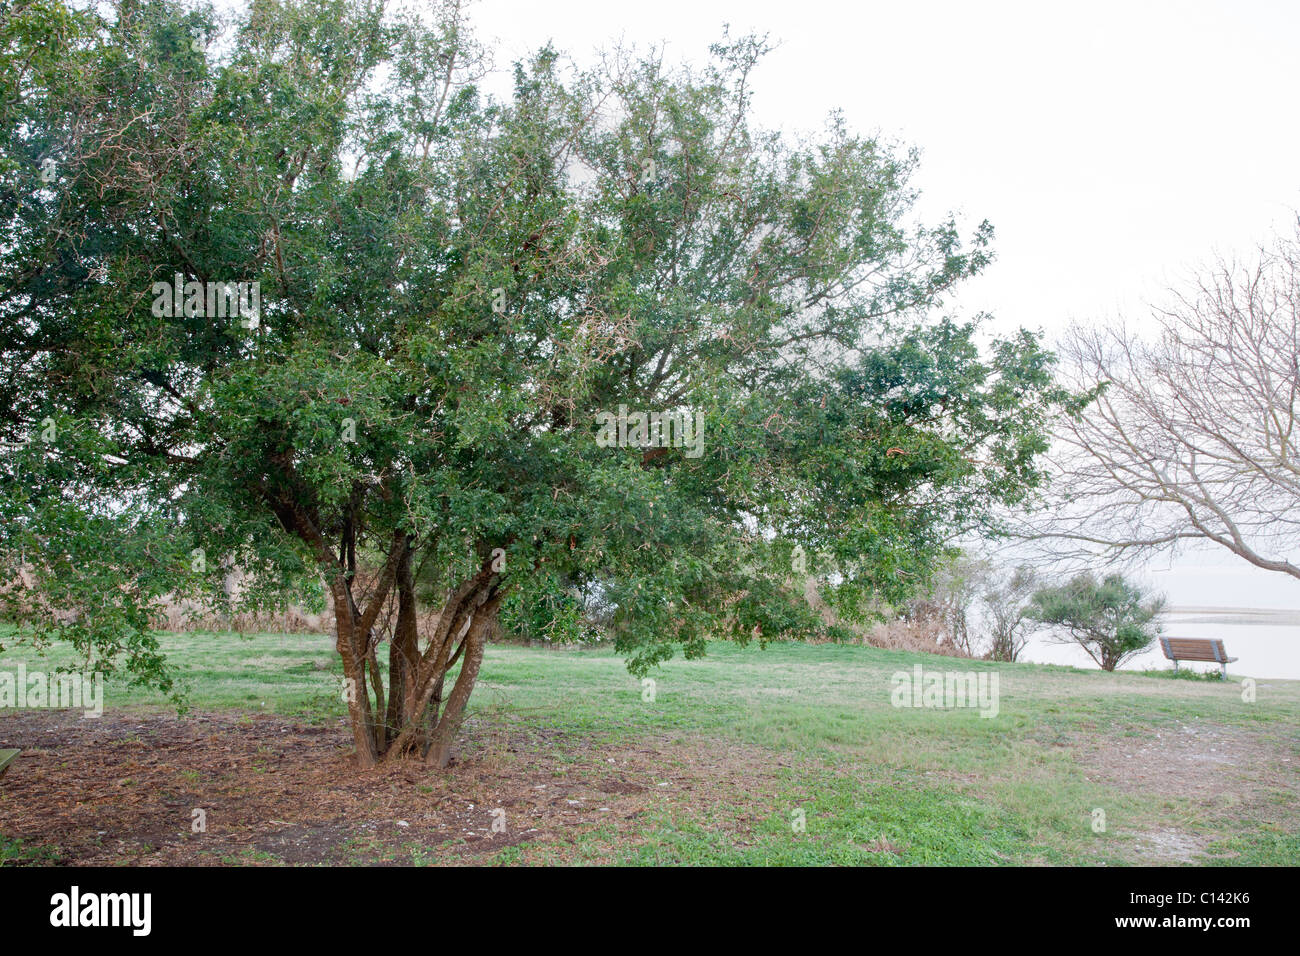 Texas Ebony tree, park setting, Stock Photo